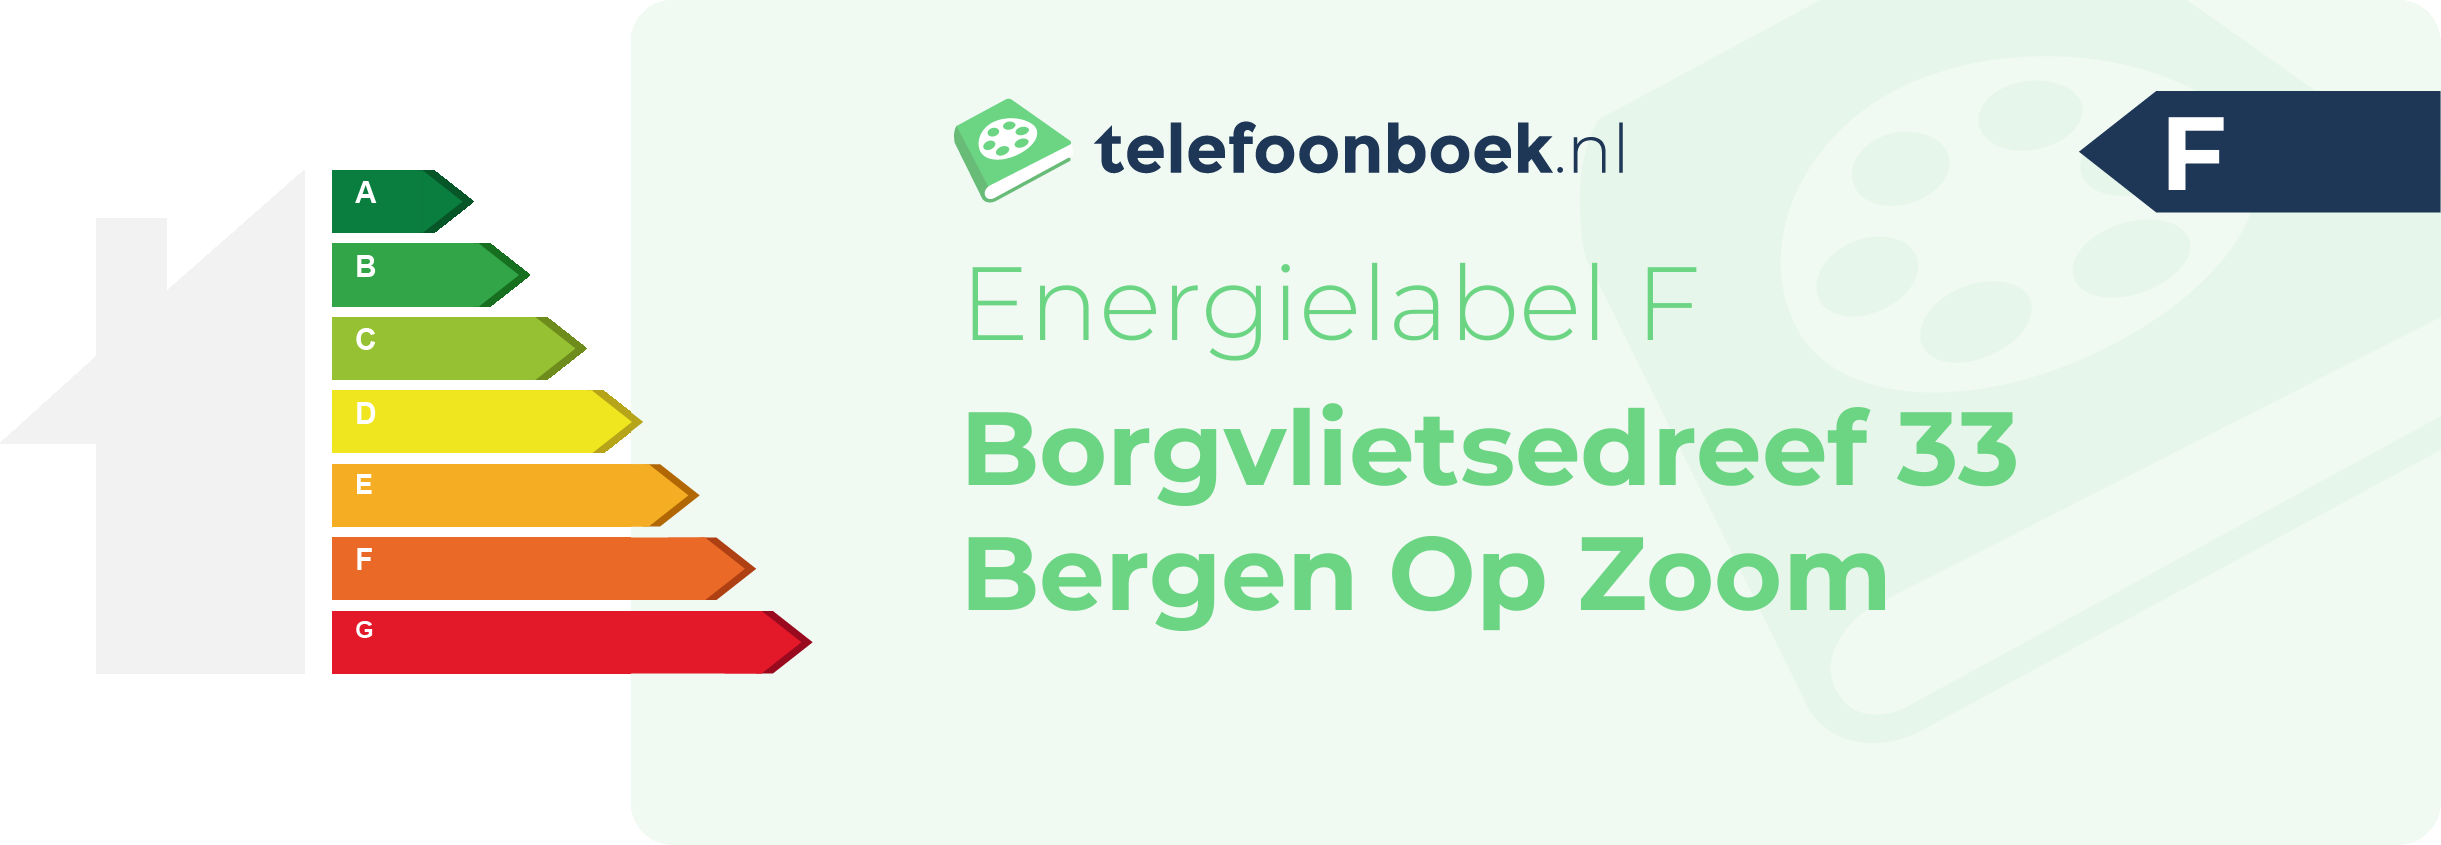 Energielabel Borgvlietsedreef 33 Bergen Op Zoom